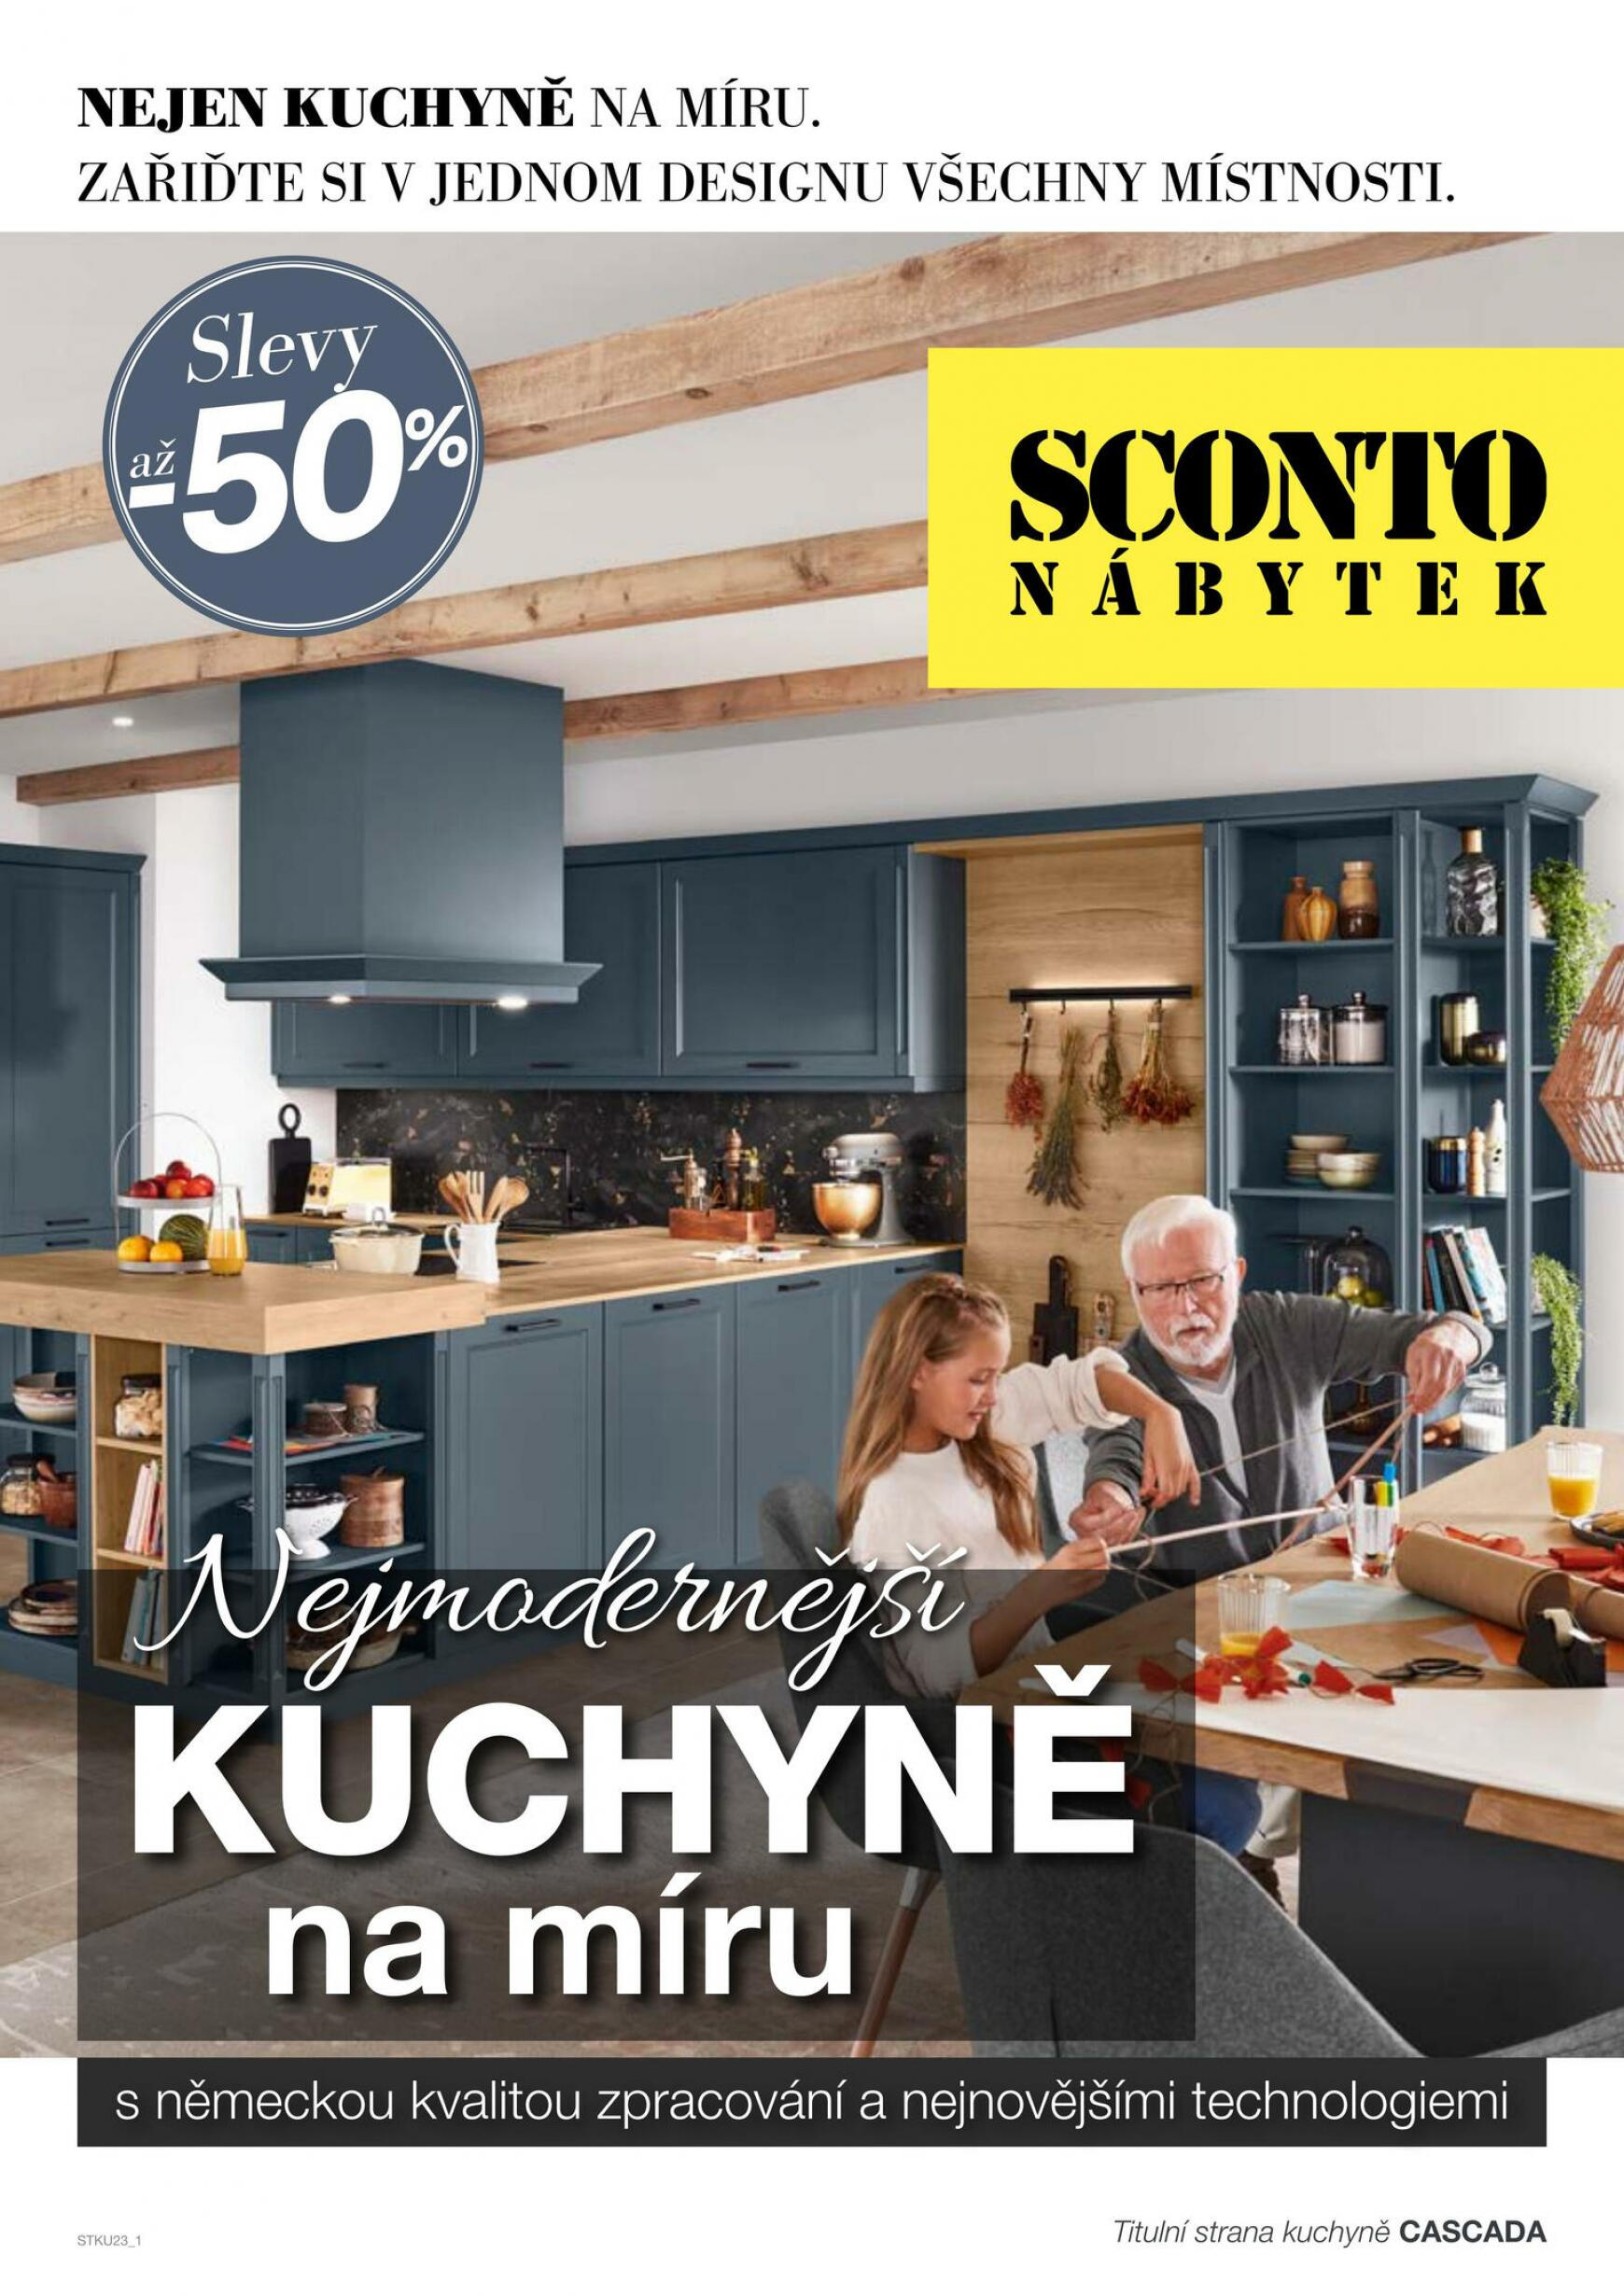 sconto-nabytek - Sconto nábytek - Kuchyně na míru platný od 18.04.2023